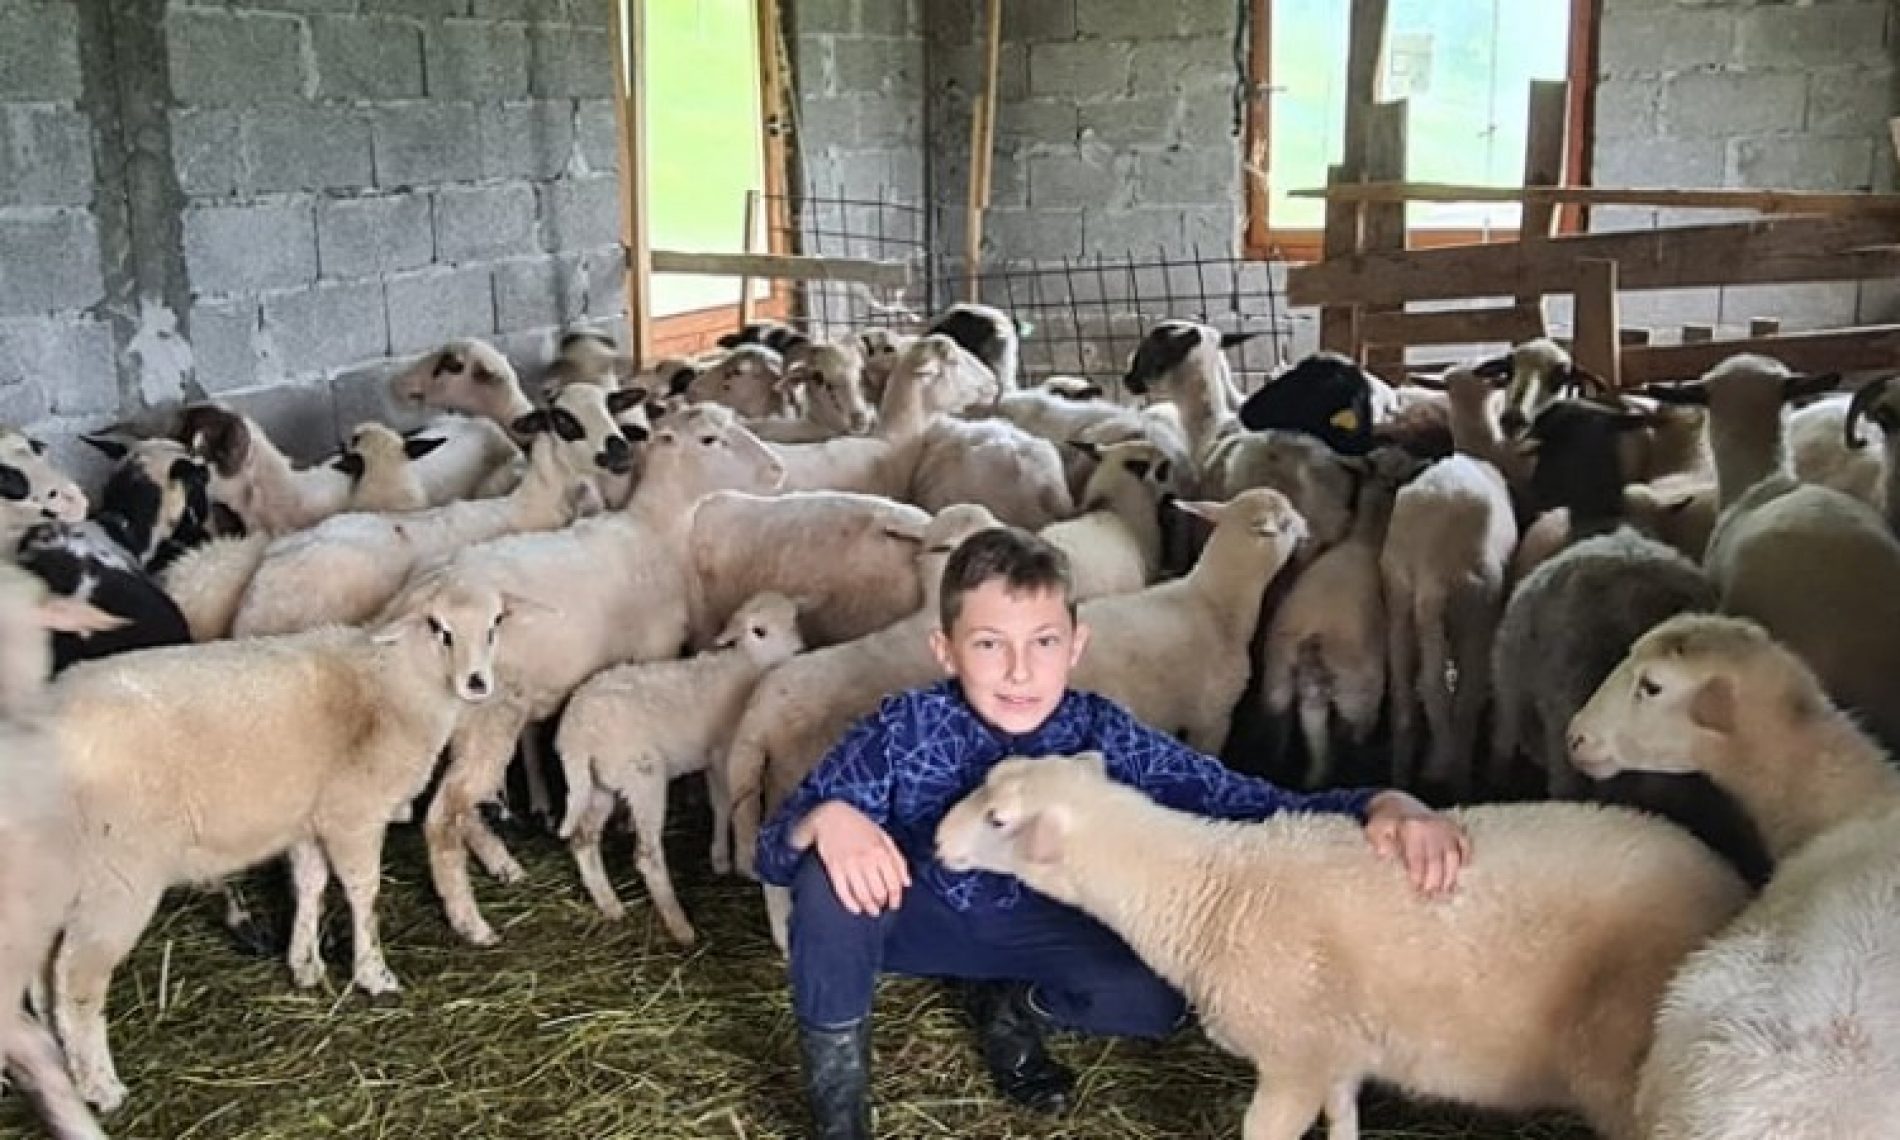 Amer ima san da postane najveći uzgajivač ovaca – njegovo  stado sada ima više od 100 grla